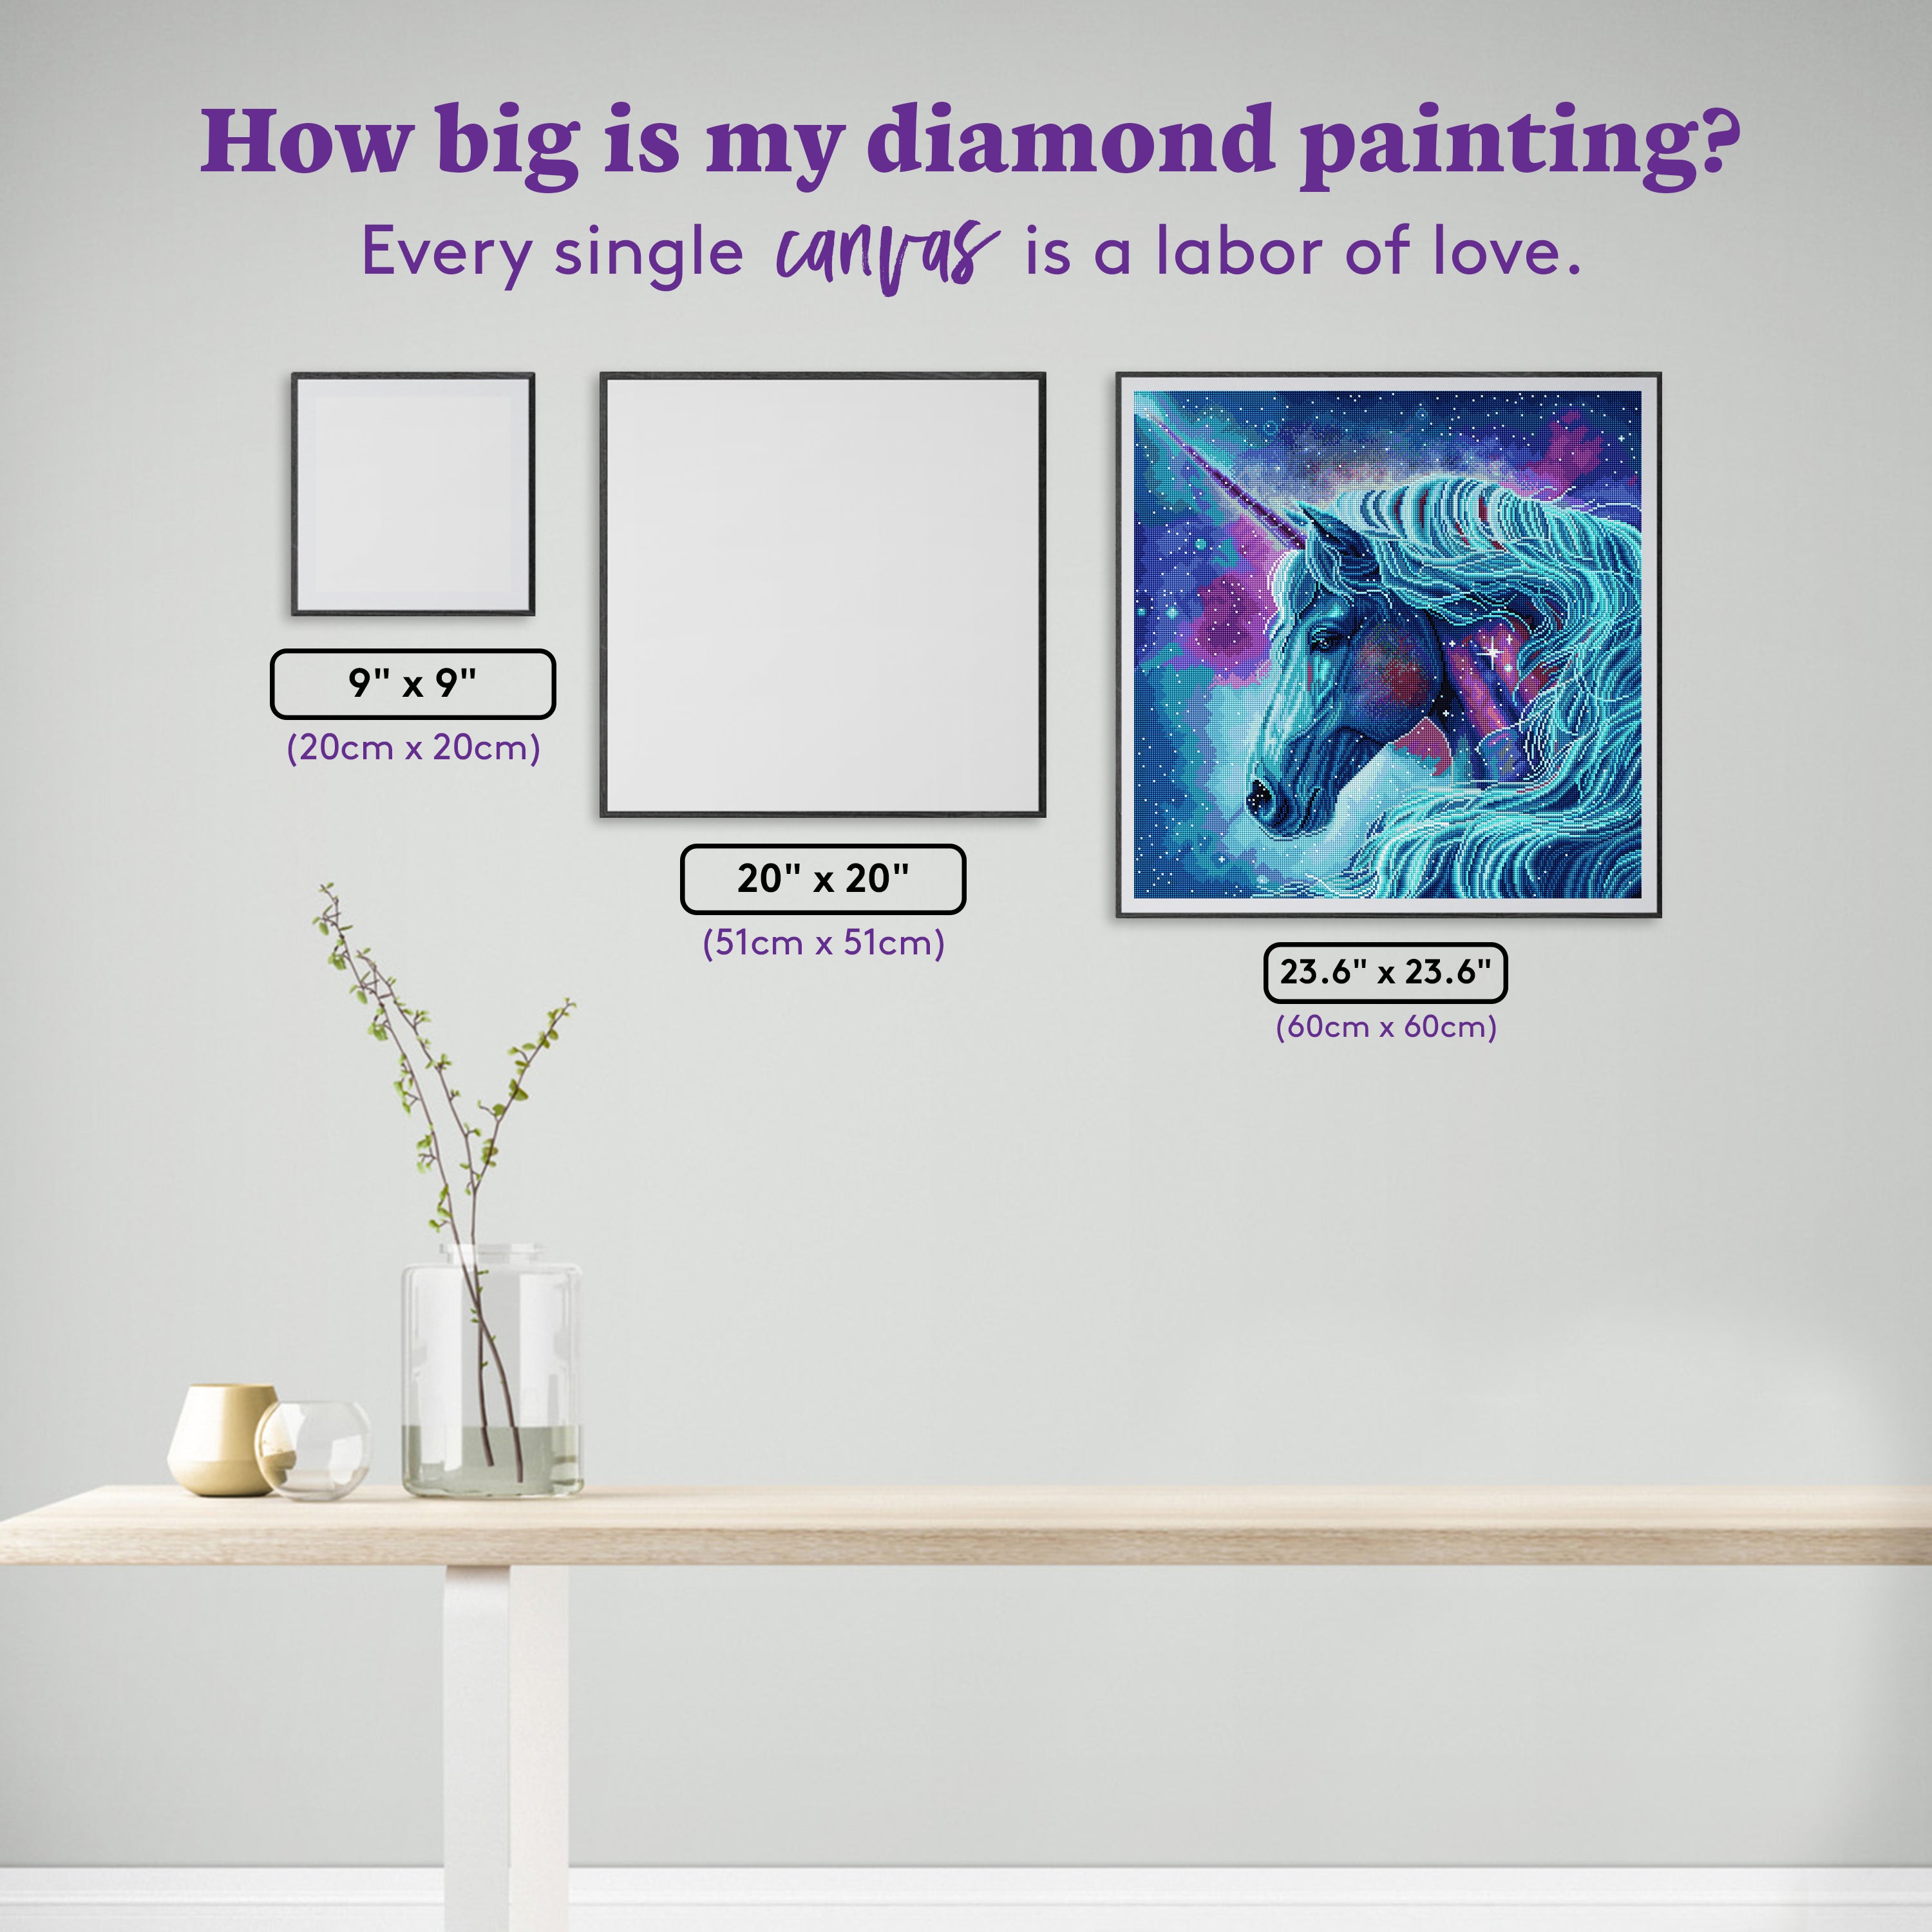 DIAMOND DOTZ® Majesty Special Edition Diamond Painting Kit 